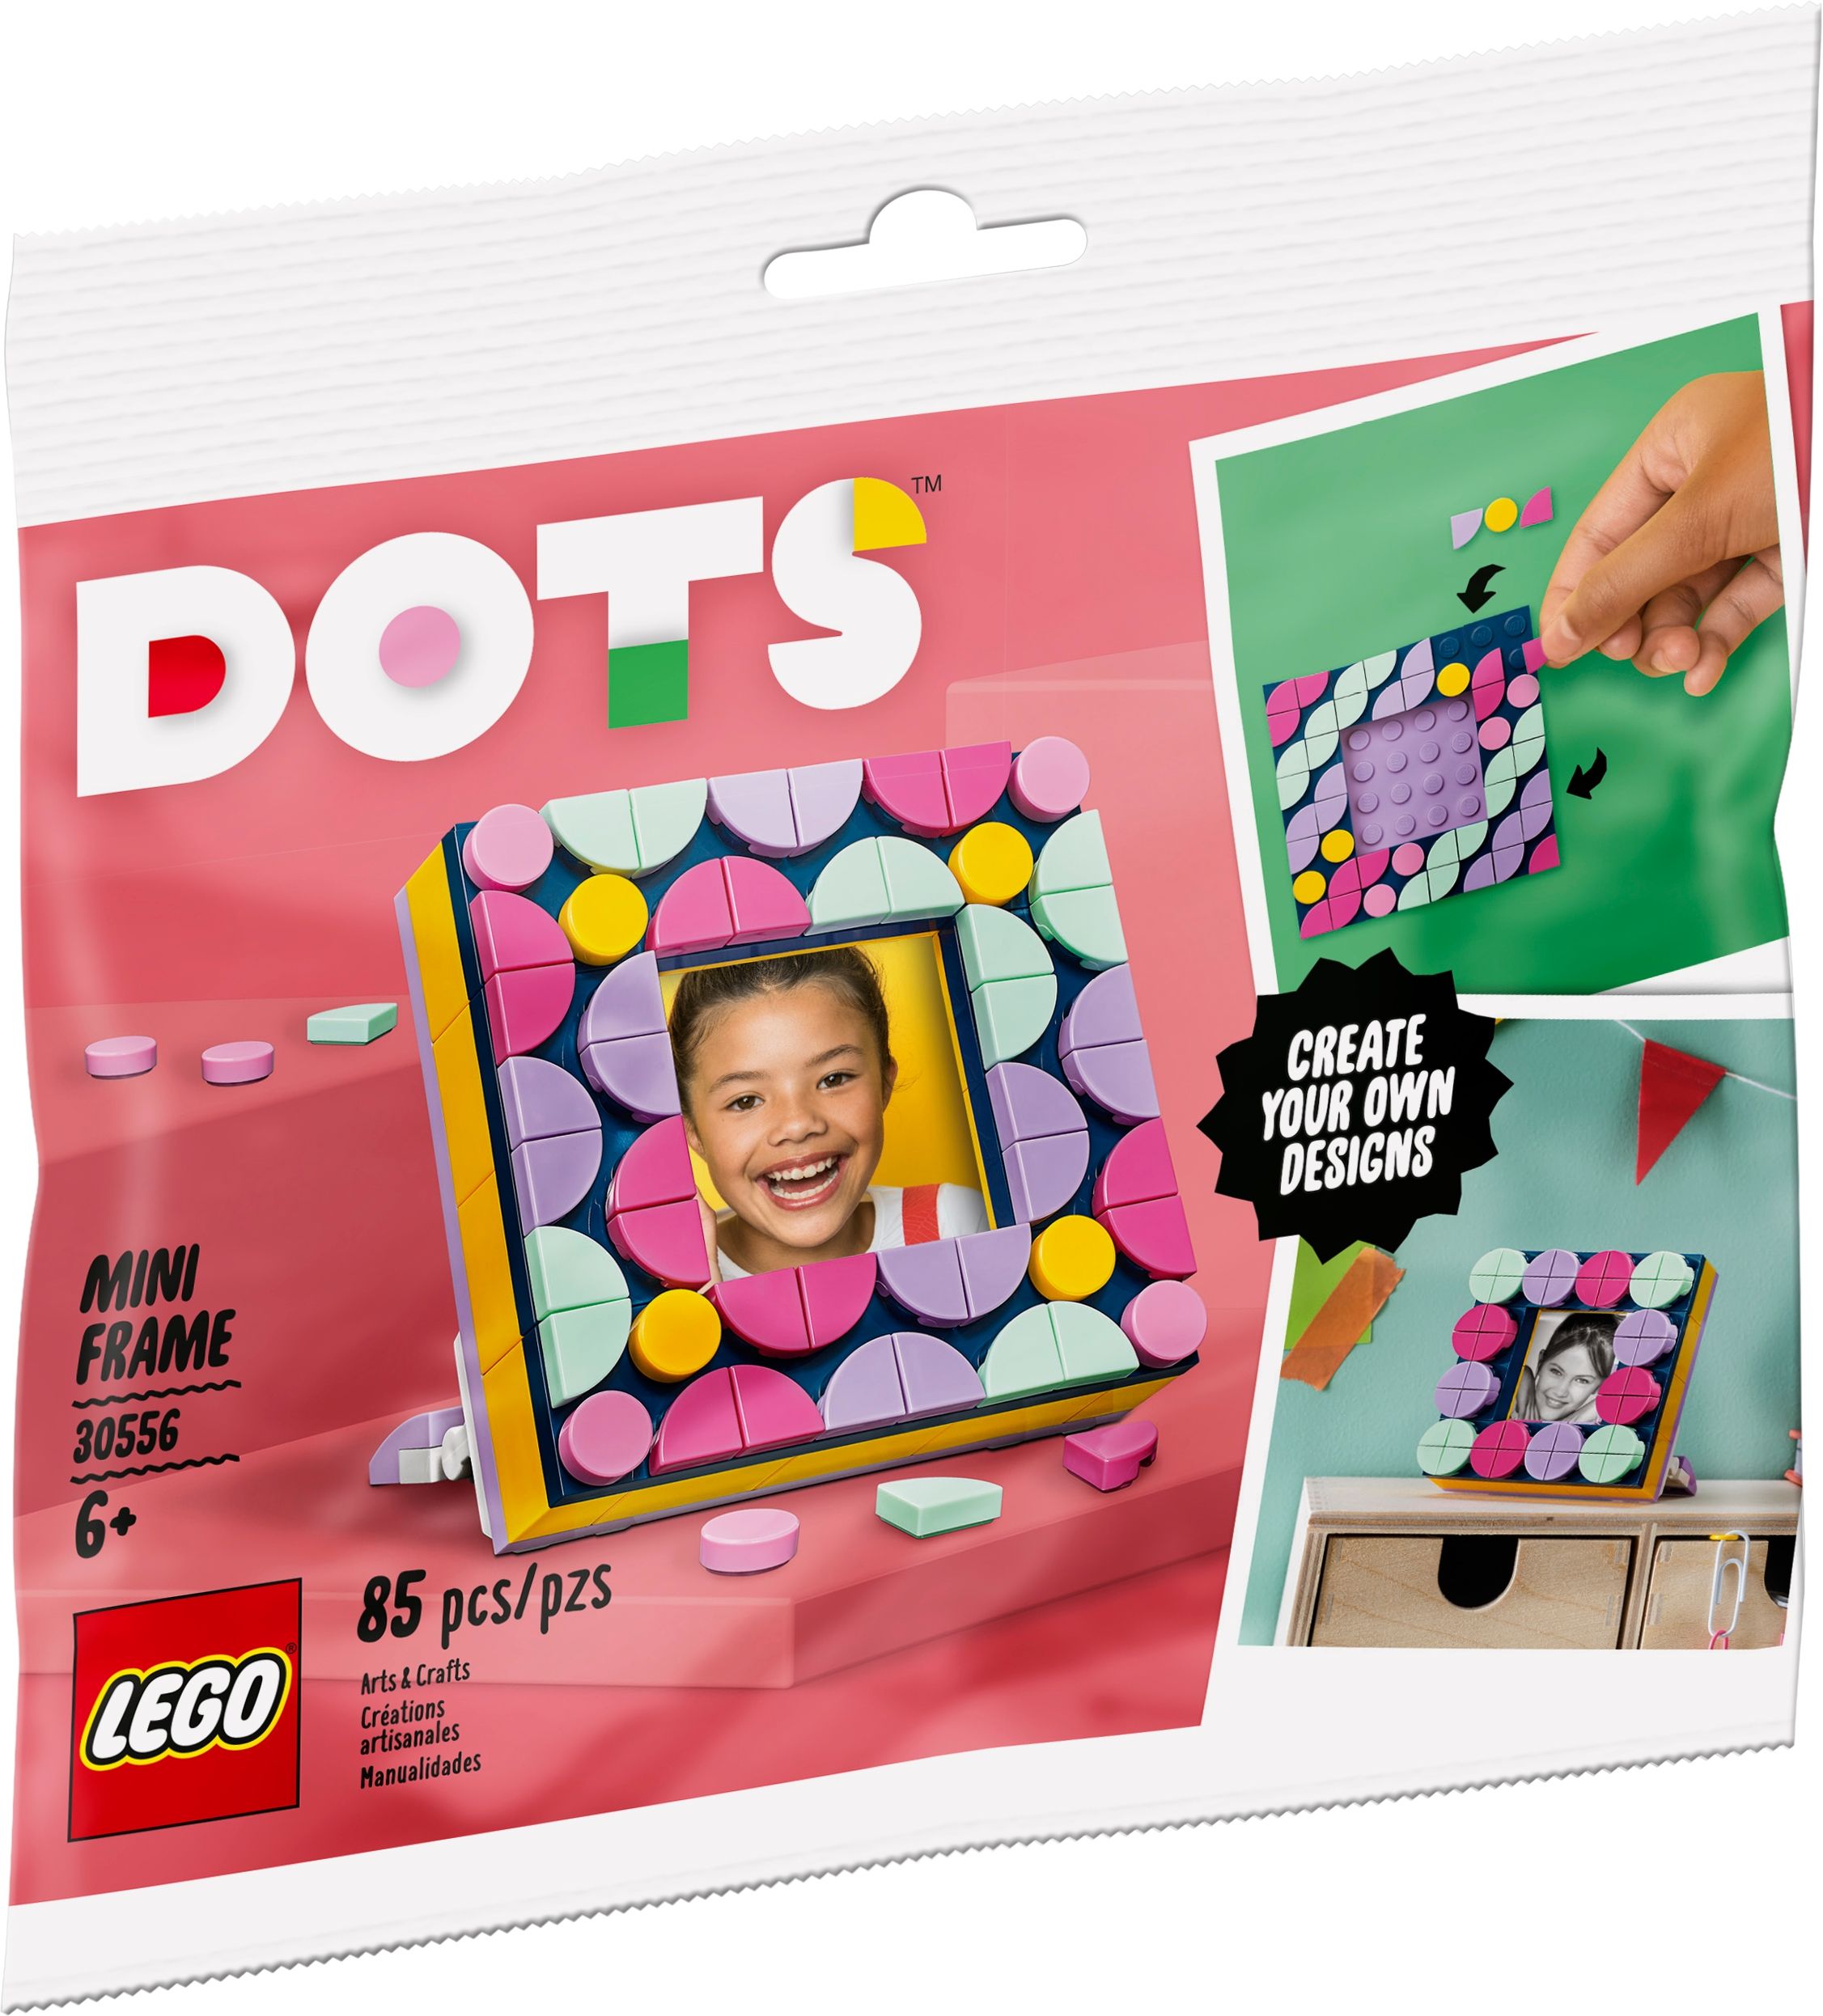 LEGO Dots 30556 DOTS Mini Bilderrahmen LEGO_30556_alt1.jpg